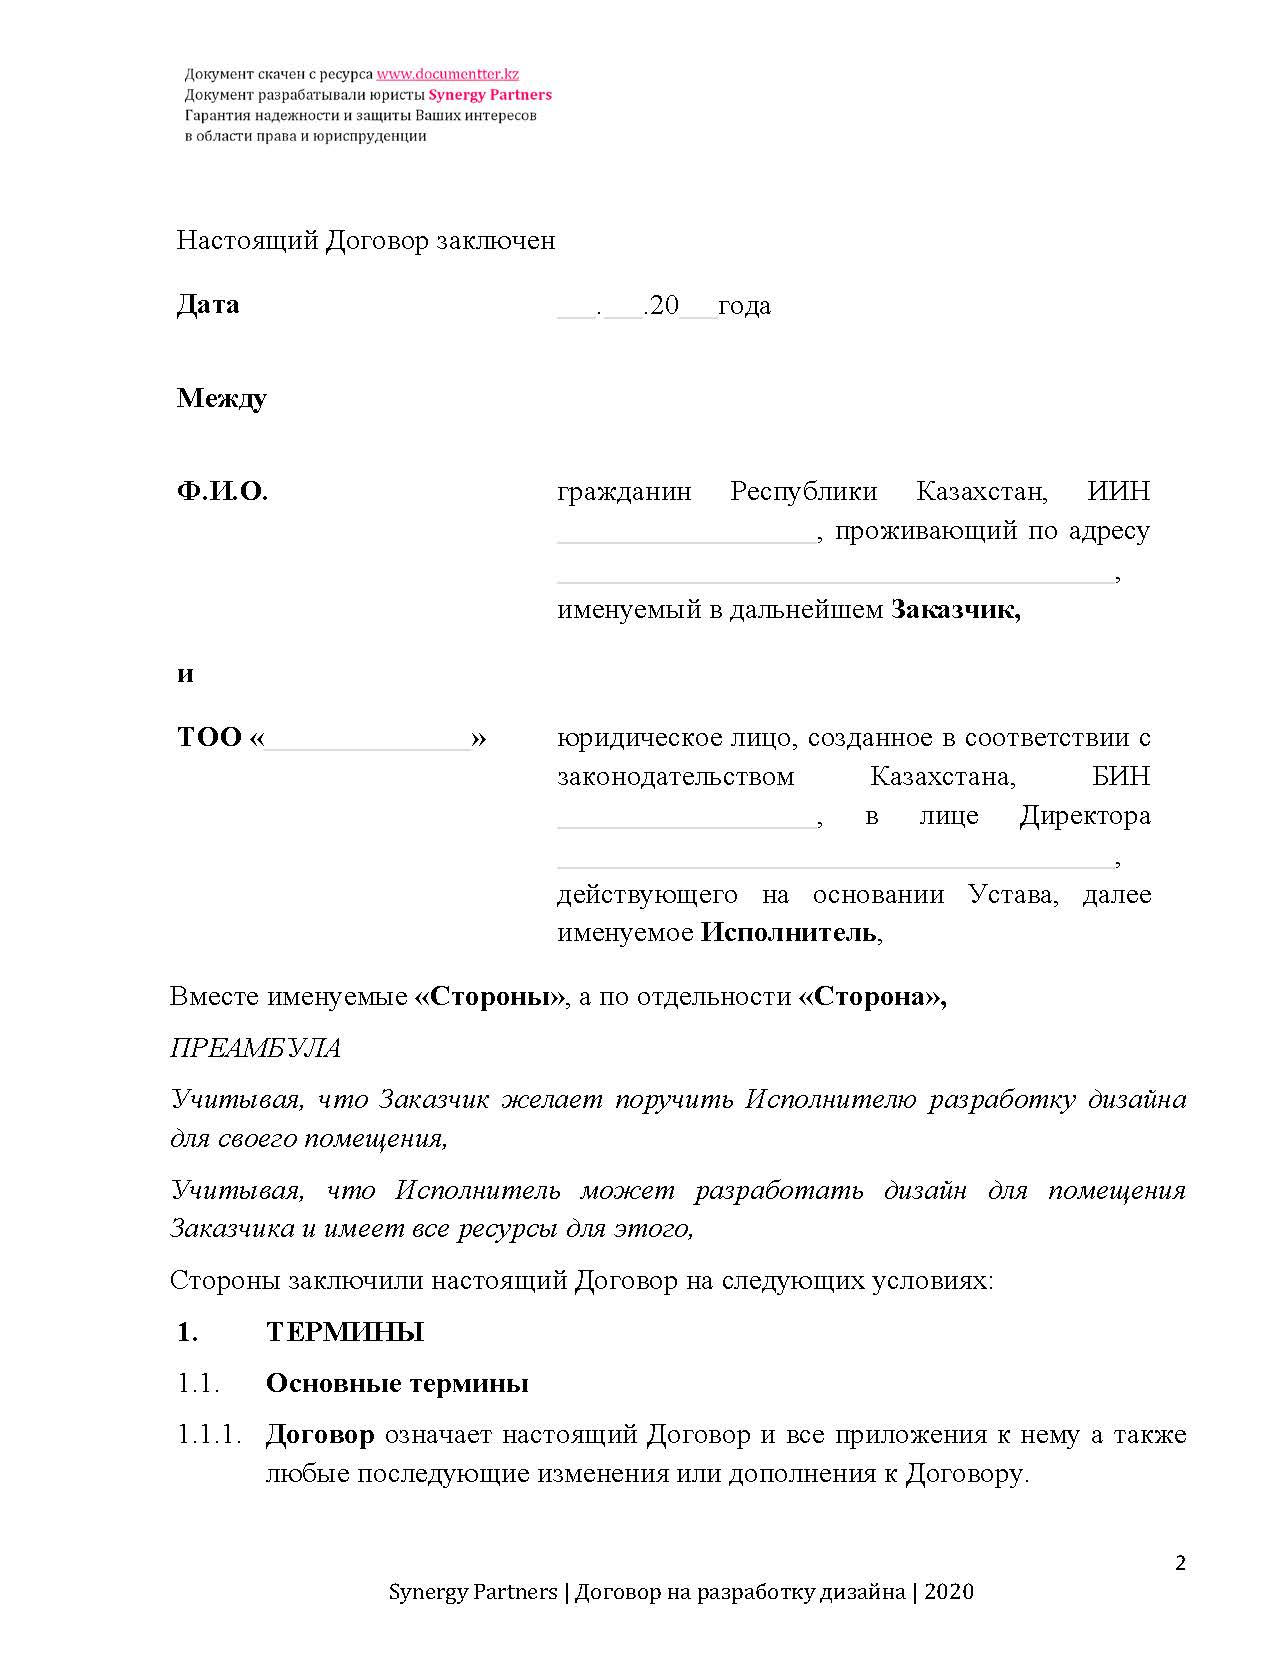 Договор на разработку дизайна помещения | documentterkz.com в Казахстане